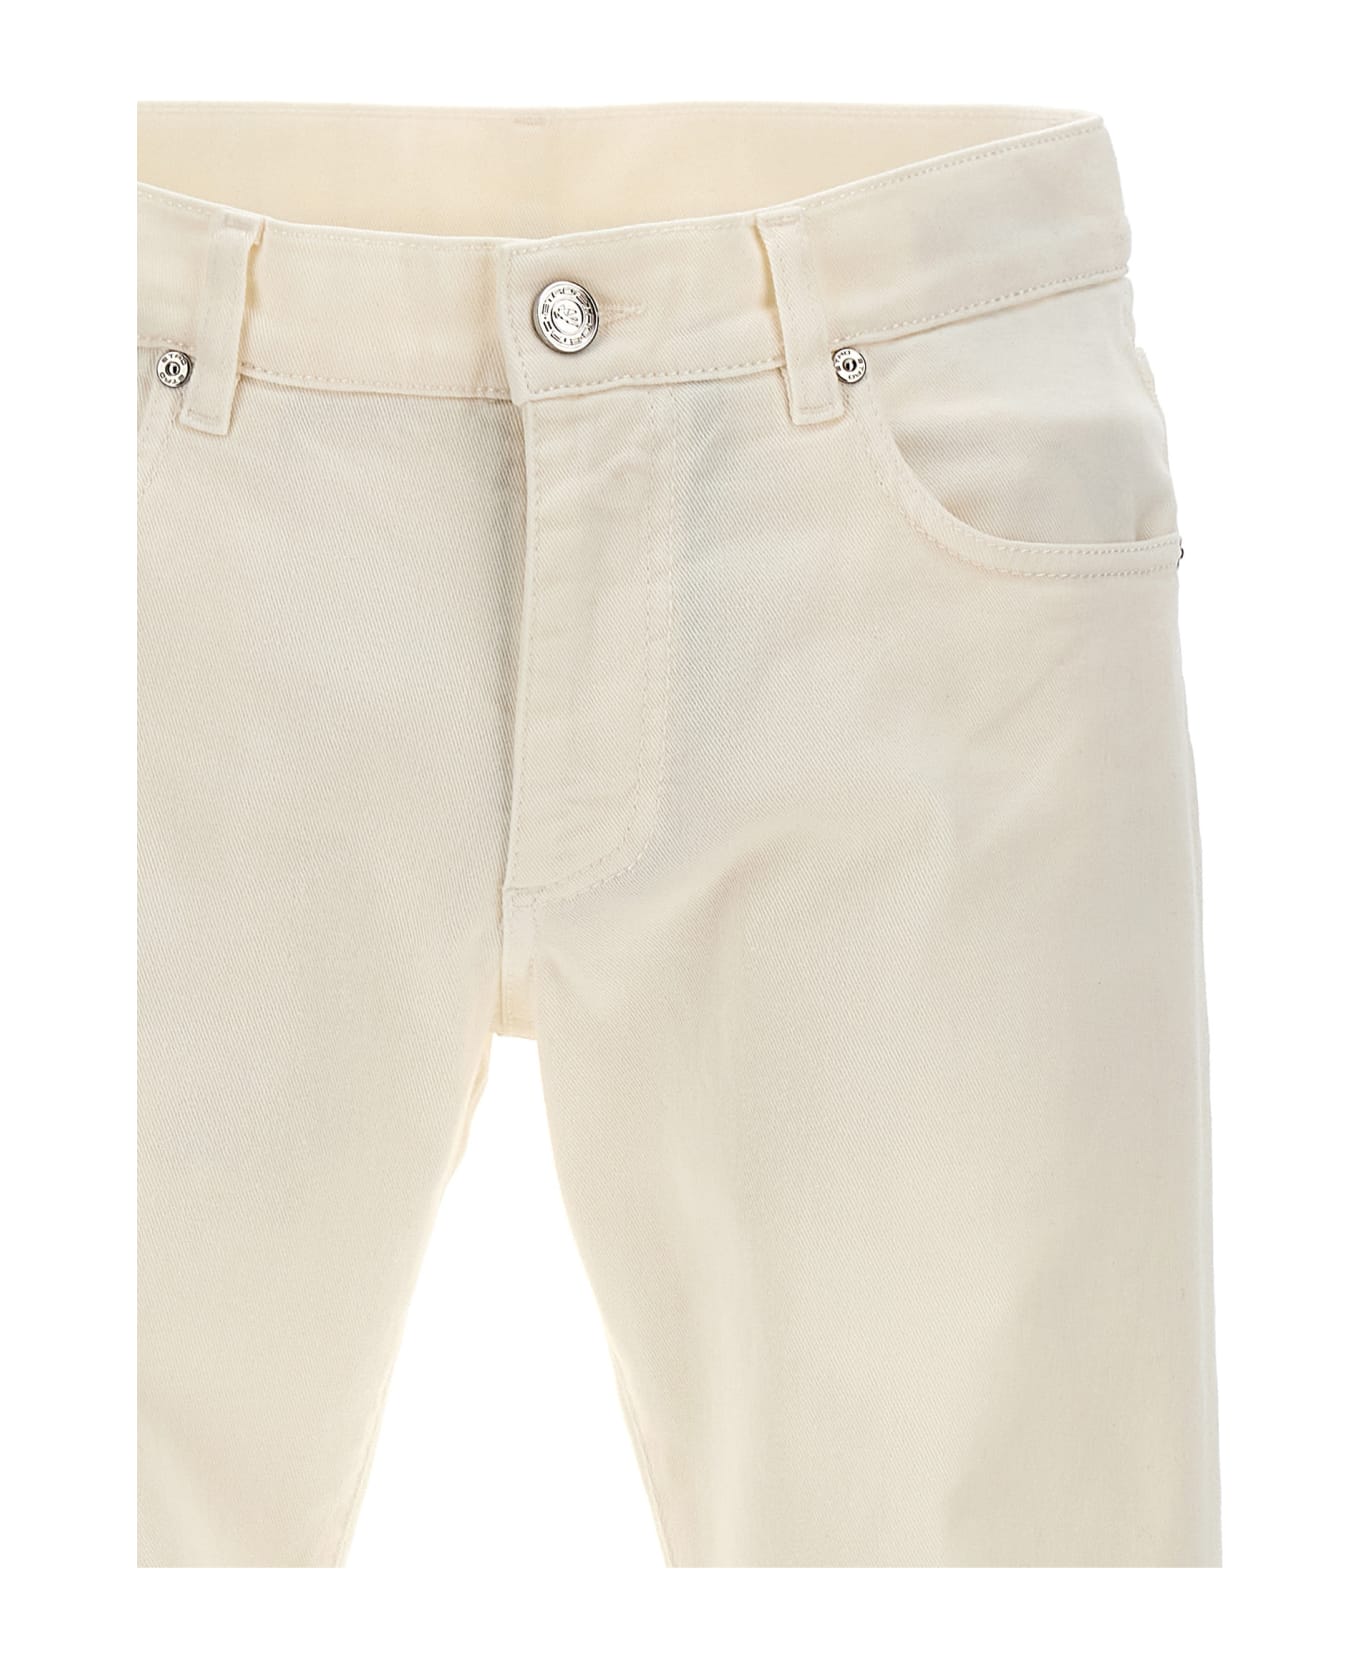 Etro Tone-on-tone Logo Jeans - White デニム